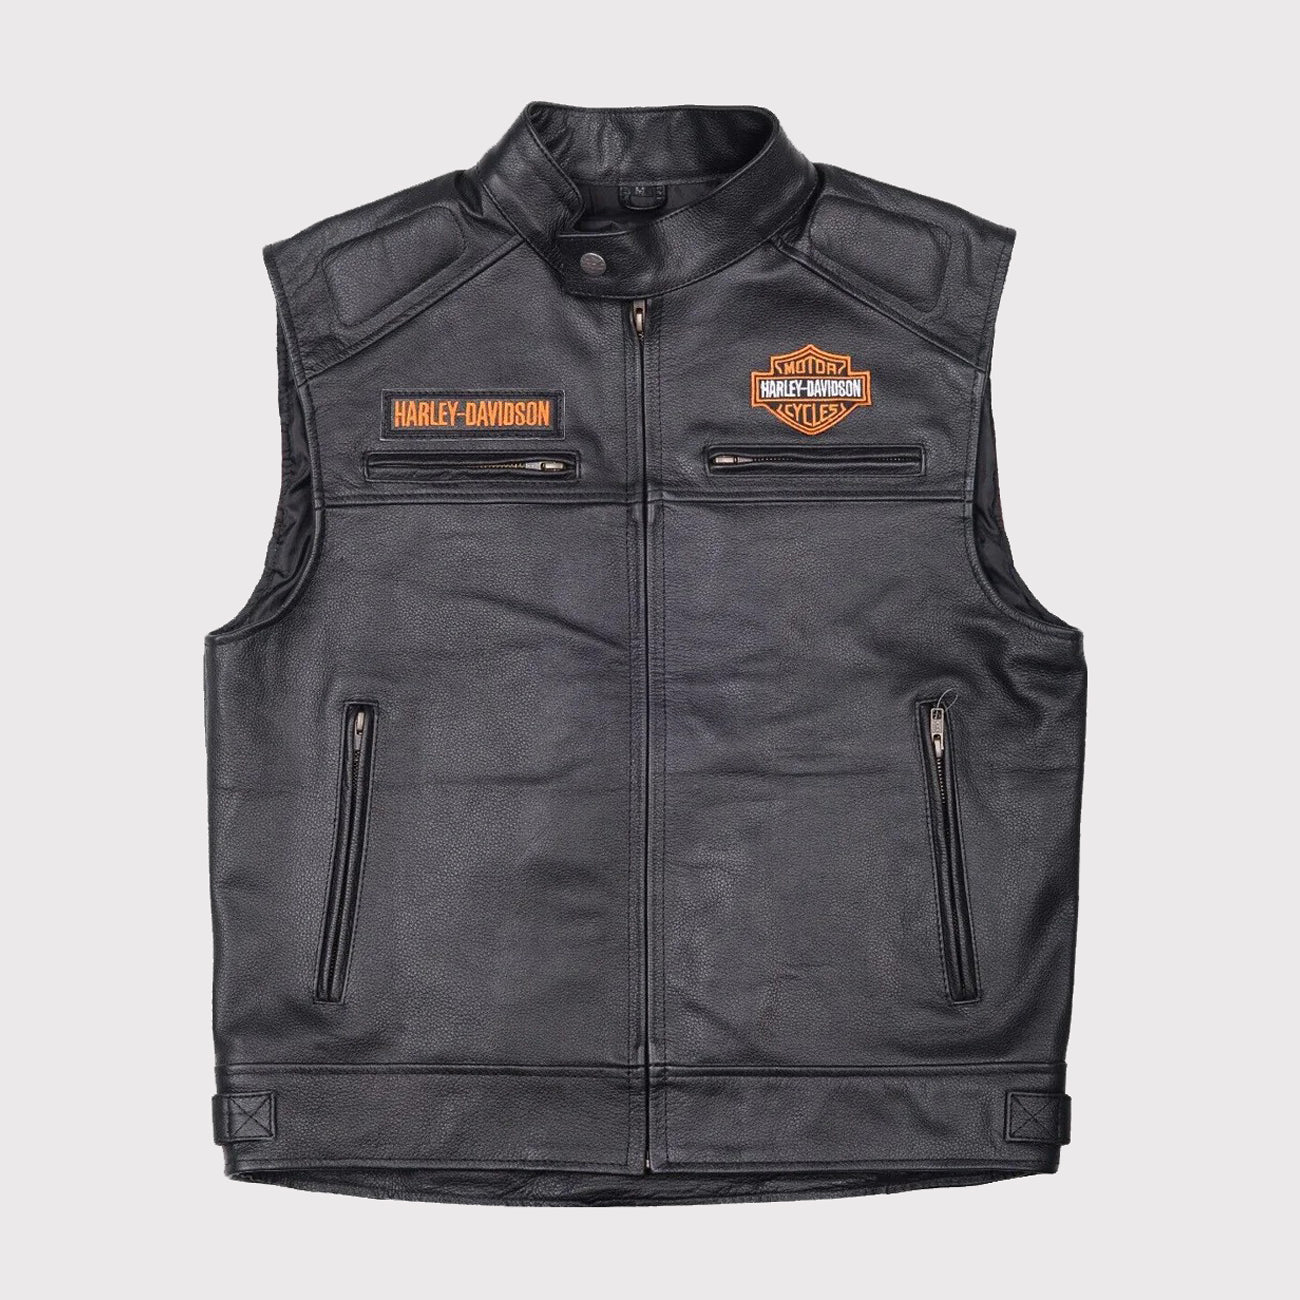 Men's Harley Davidson Genuine Motorcycle Black Leather Vest